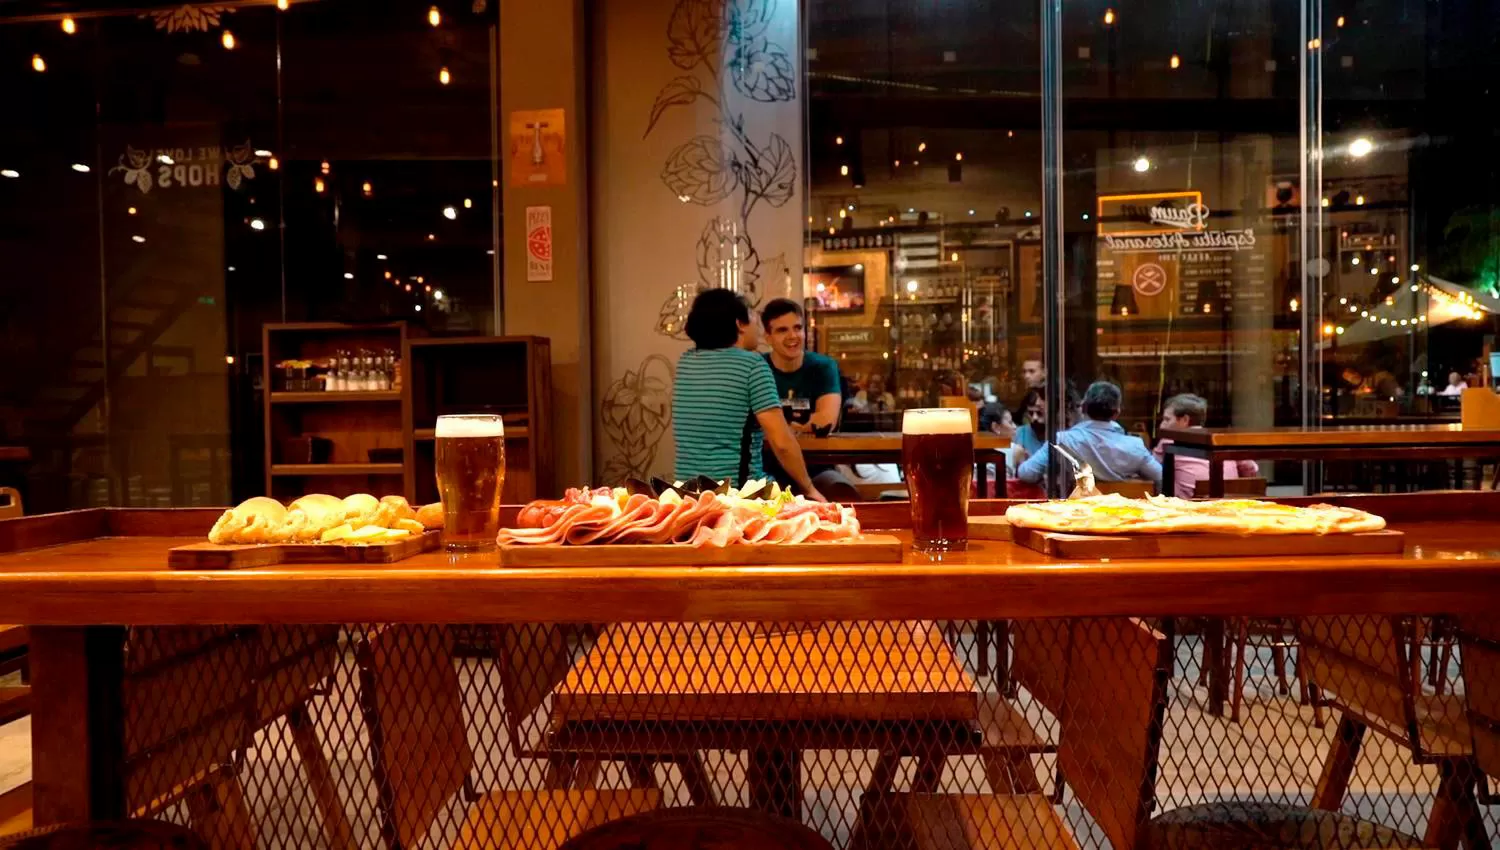 MESAS VACÍAS. Muchos locales gastronómicos en Tucumán tienen acotados horarios permitidos para la atención